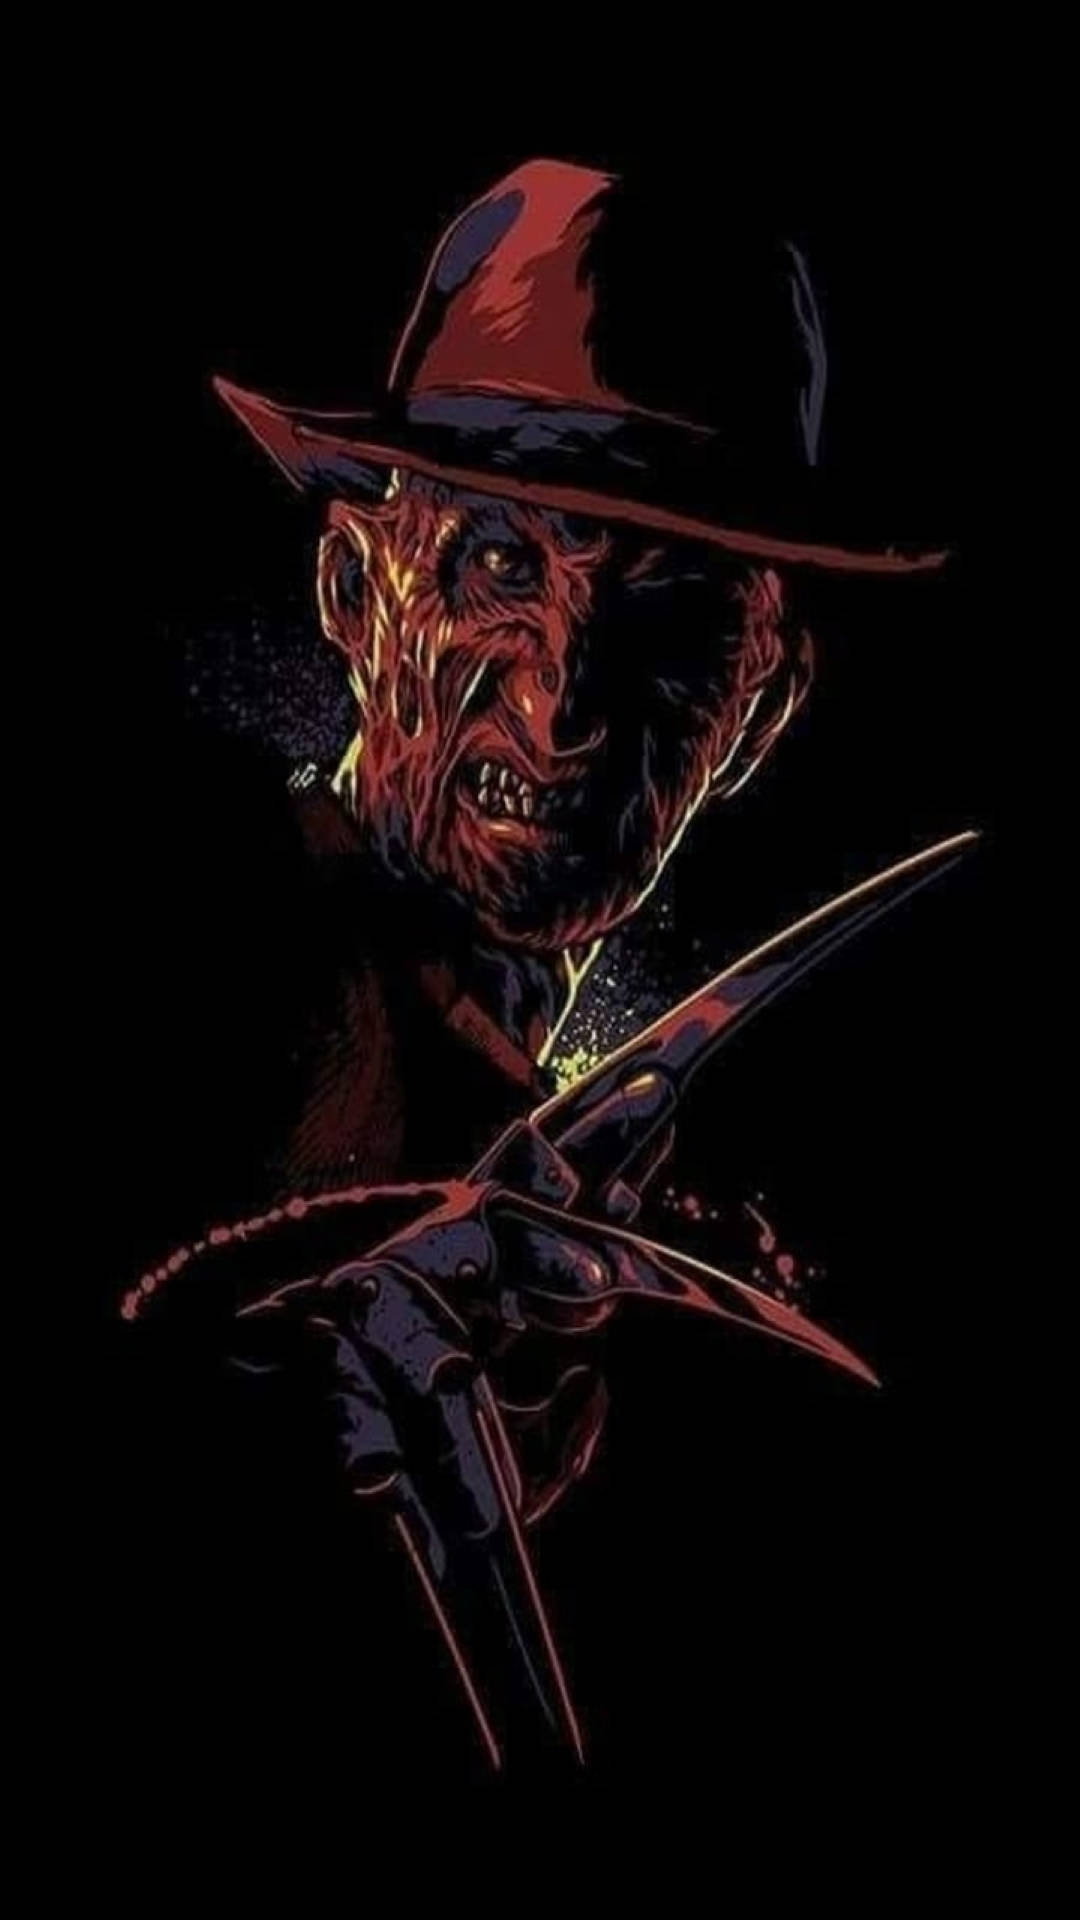 Dark-themed Freddy Krueger